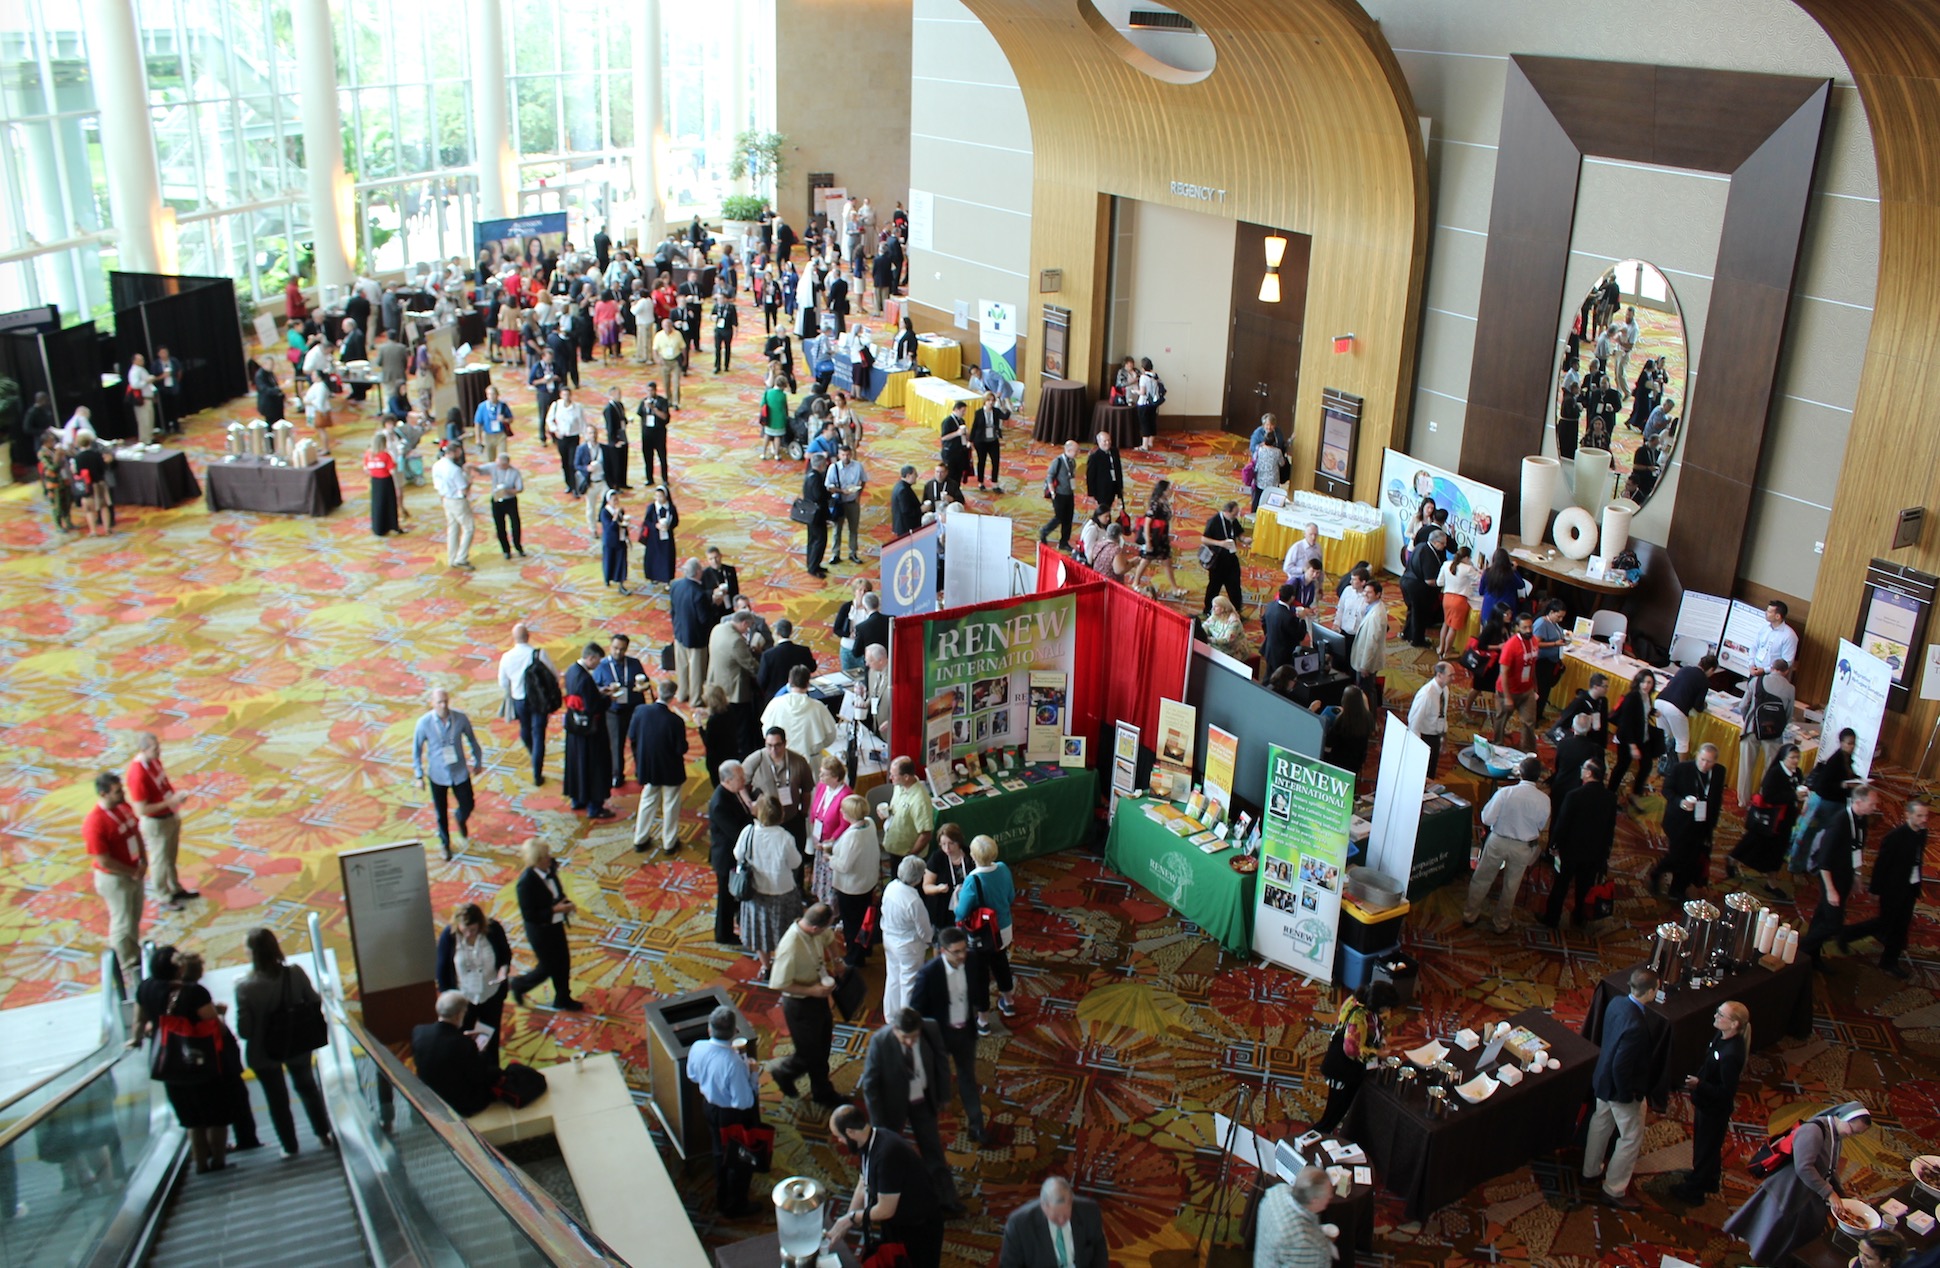 Panorámica de la 'reception' en el Congreso de Orlando (Fto. Enrique Soros cc)